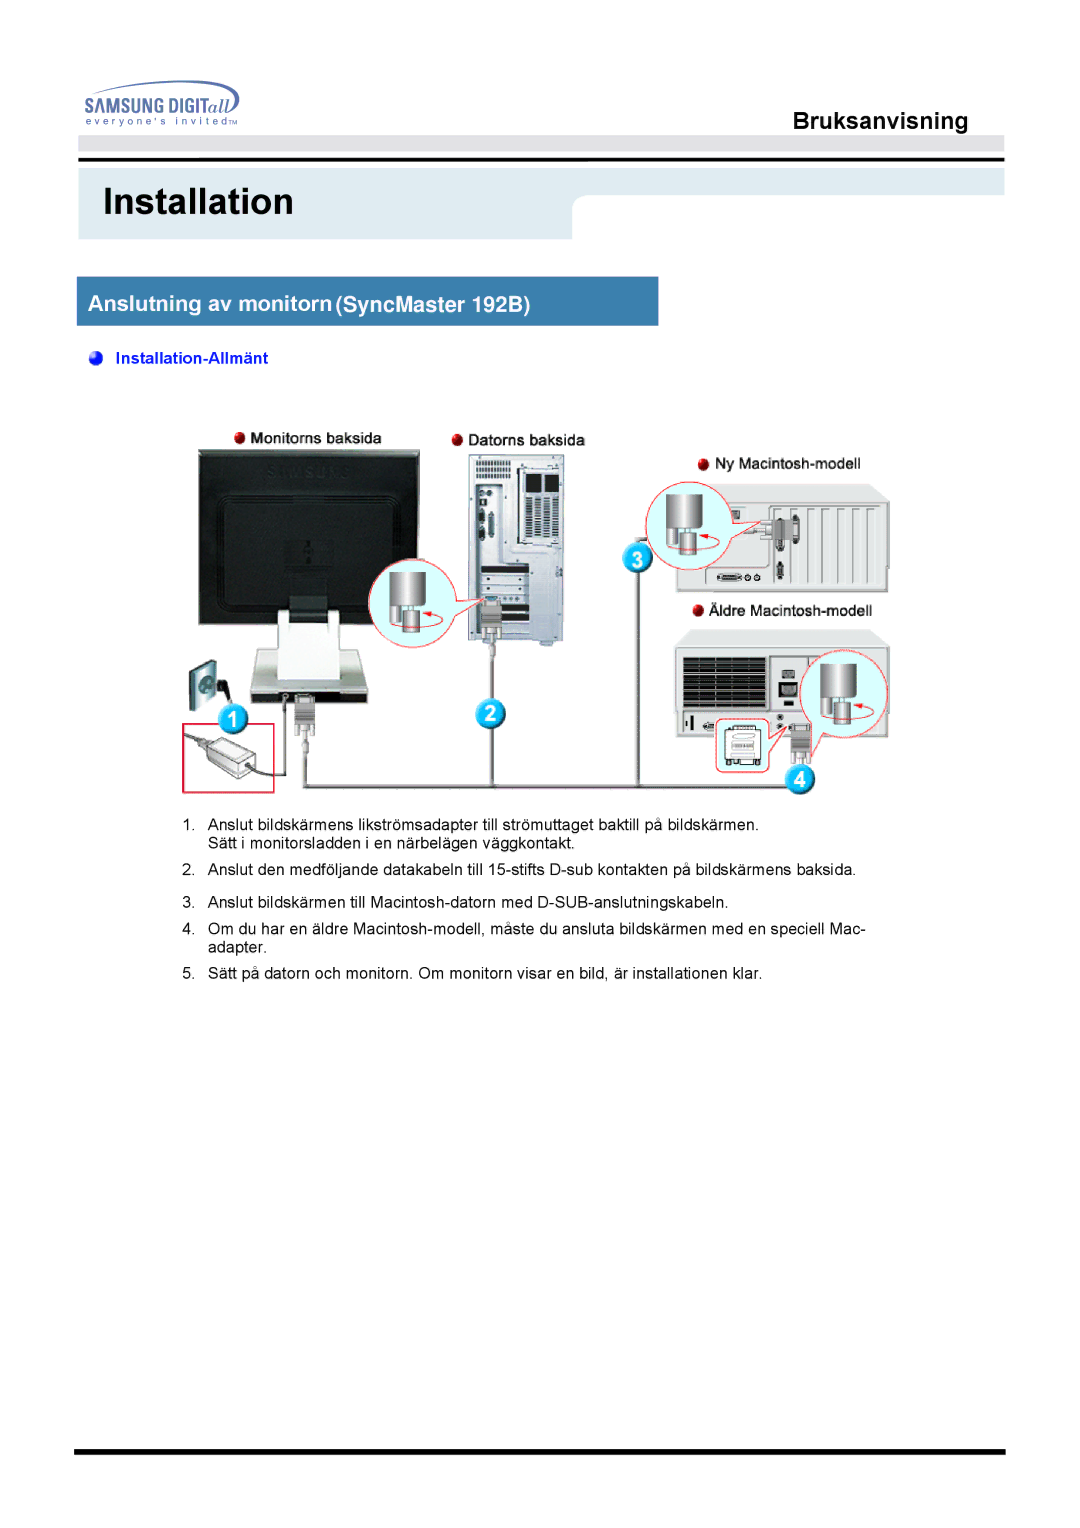 Samsung MO19PSZS/EDC manual Installation, Anslutning av monitorn SyncMaster 192B 